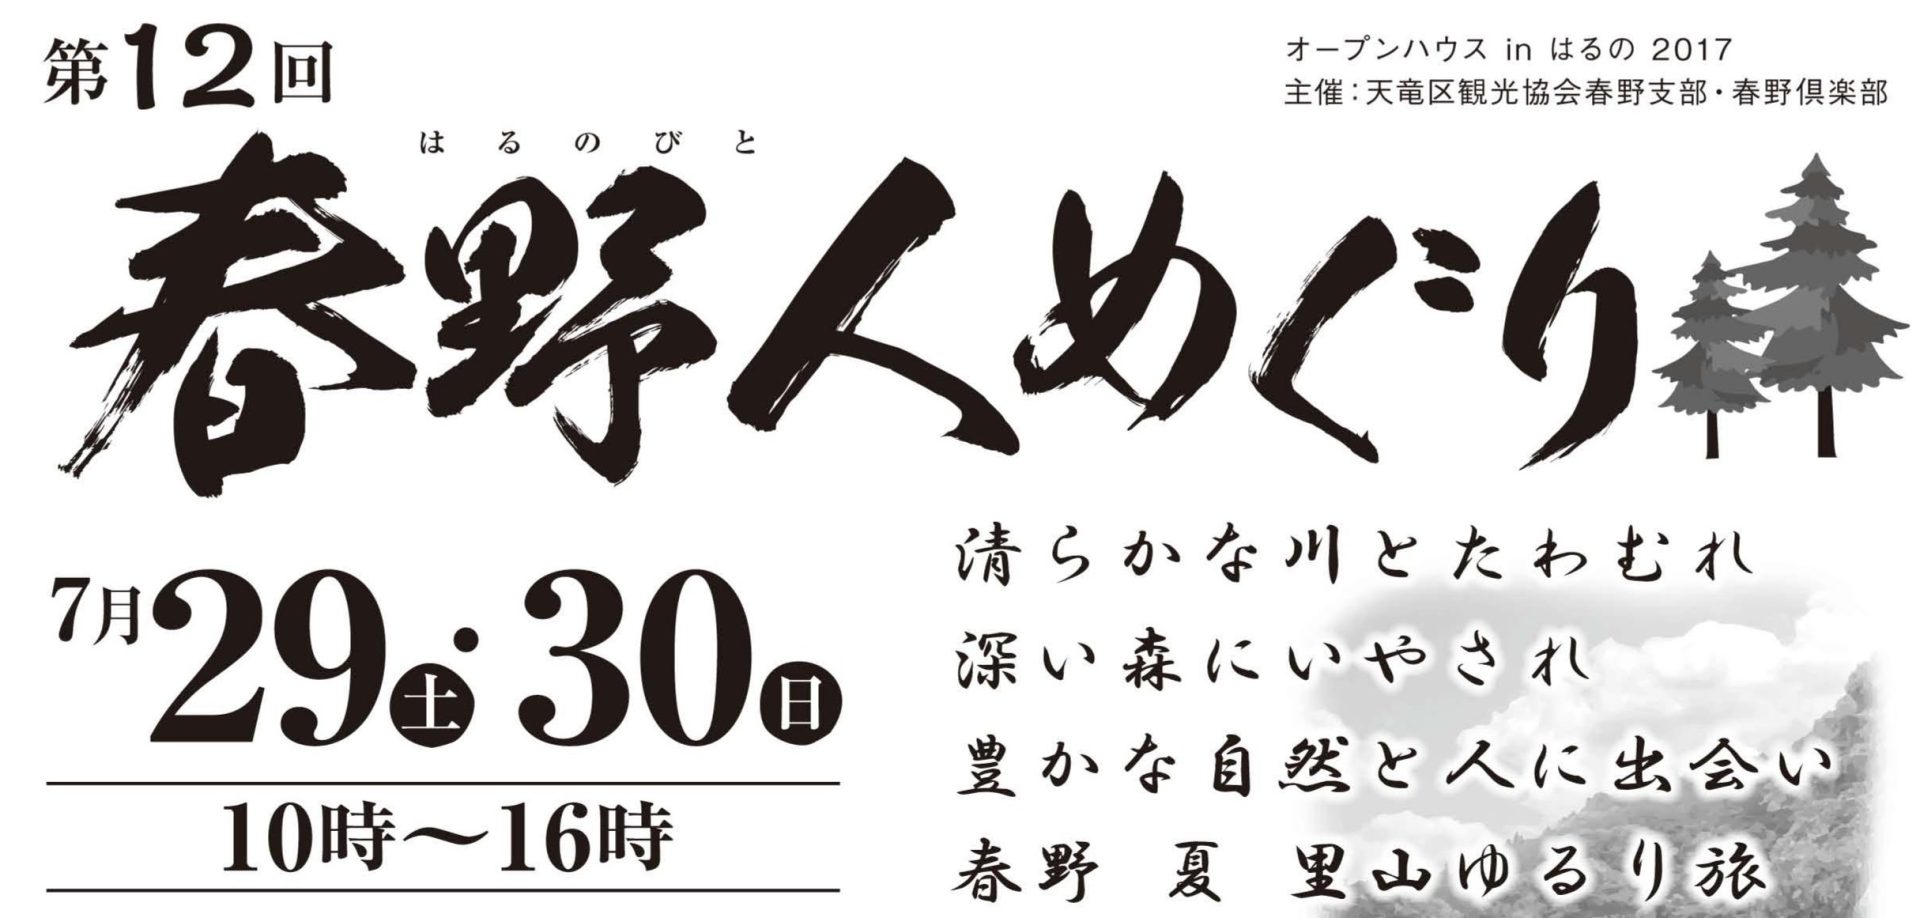 【静岡県】浜松市天竜区オープンハウス「春野人めぐり」 | 移住関連イベント情報